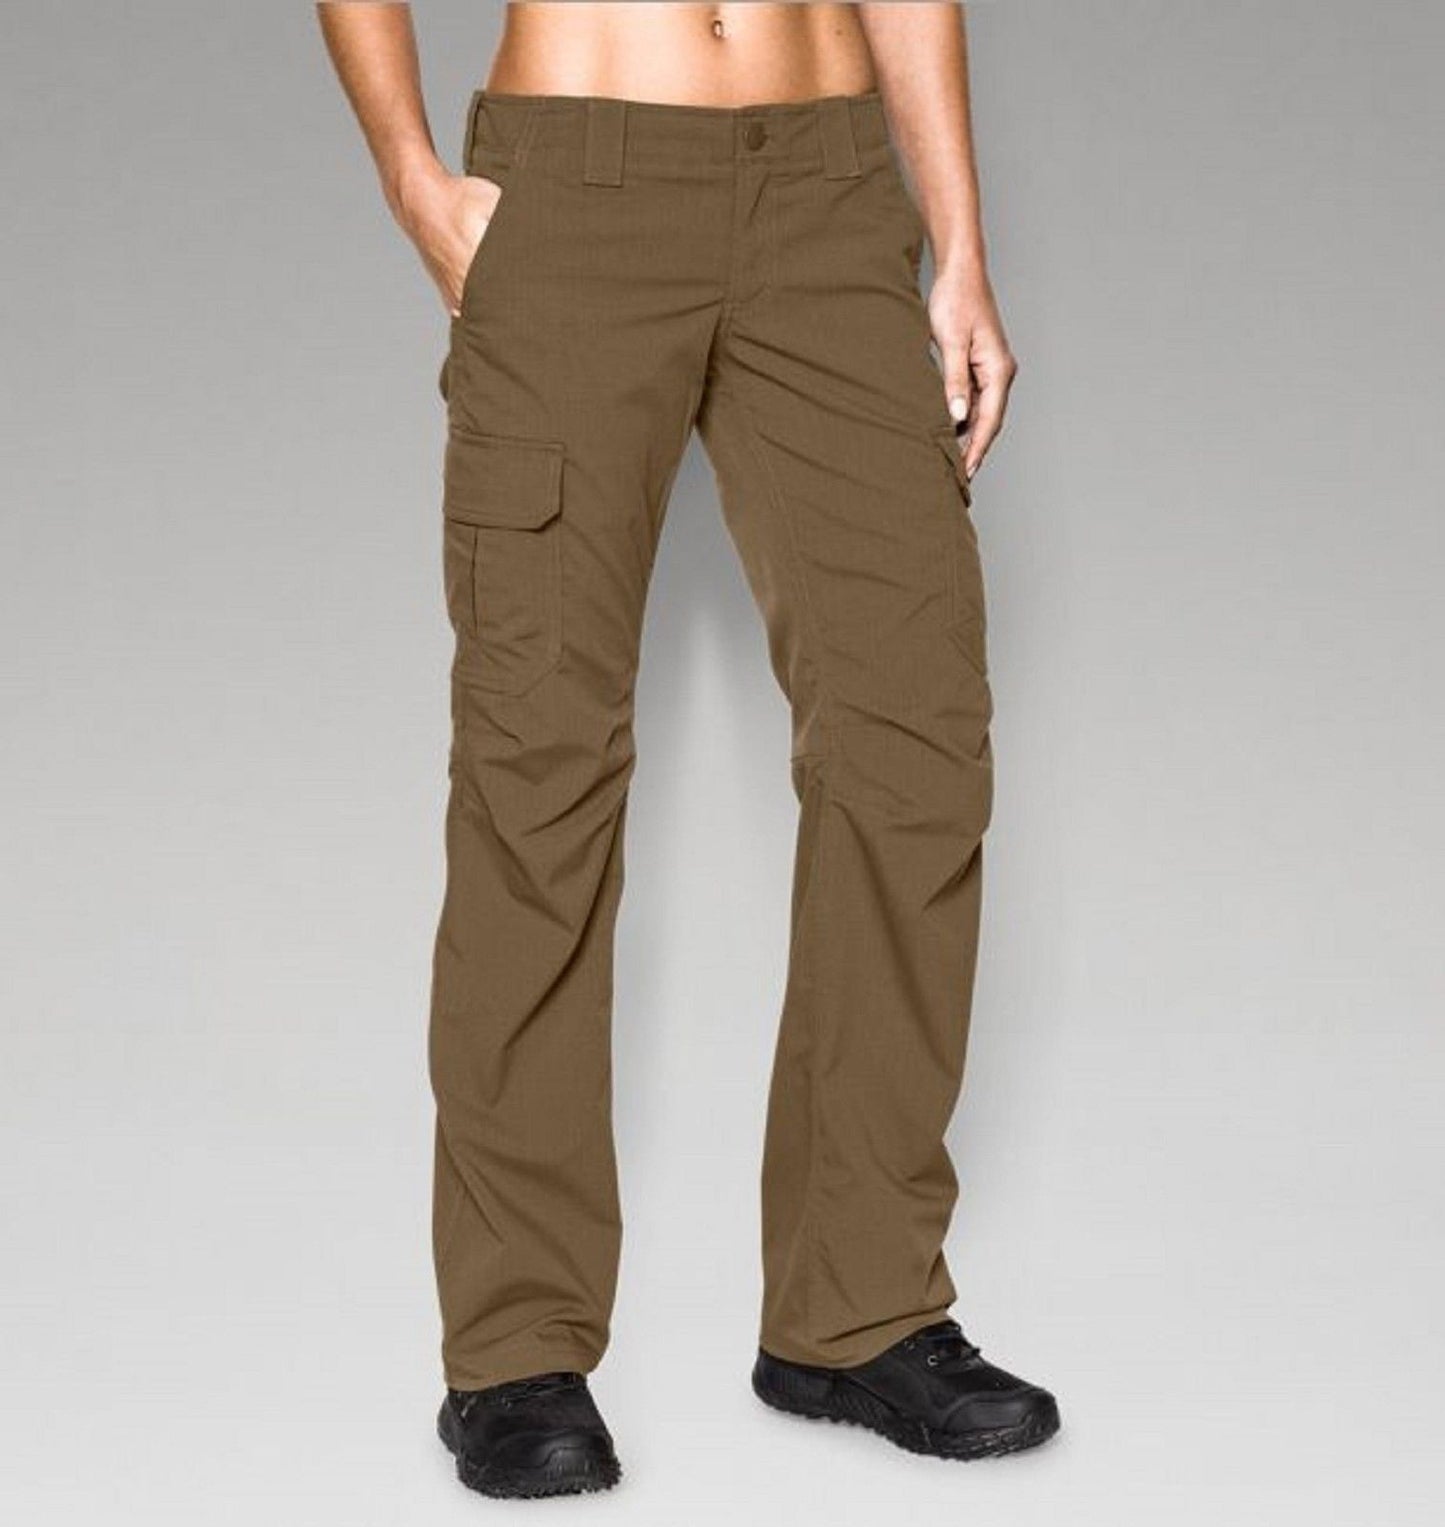 Under Armour Women's Tactical Patrol Pants Black Size 4